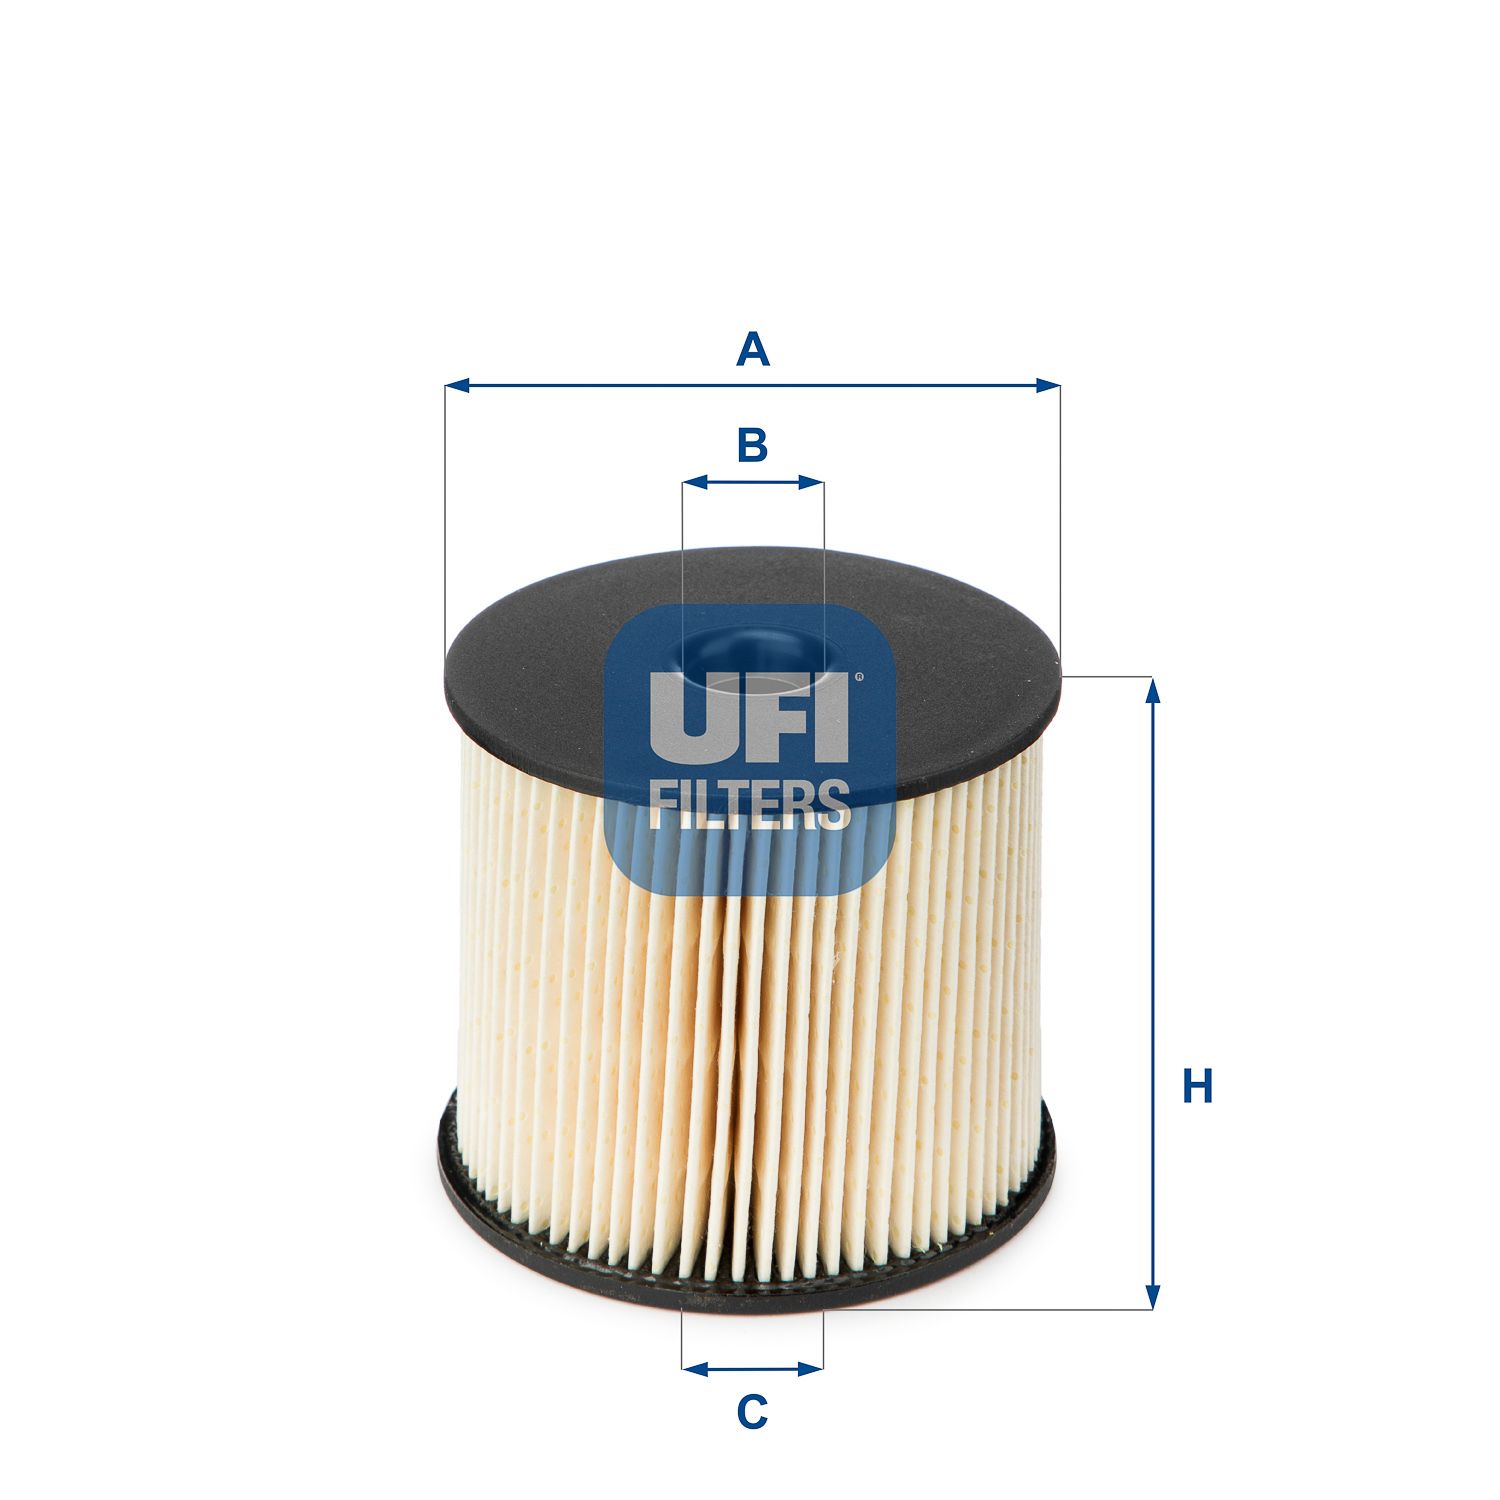 Palivový filtr UFI 26.003.00